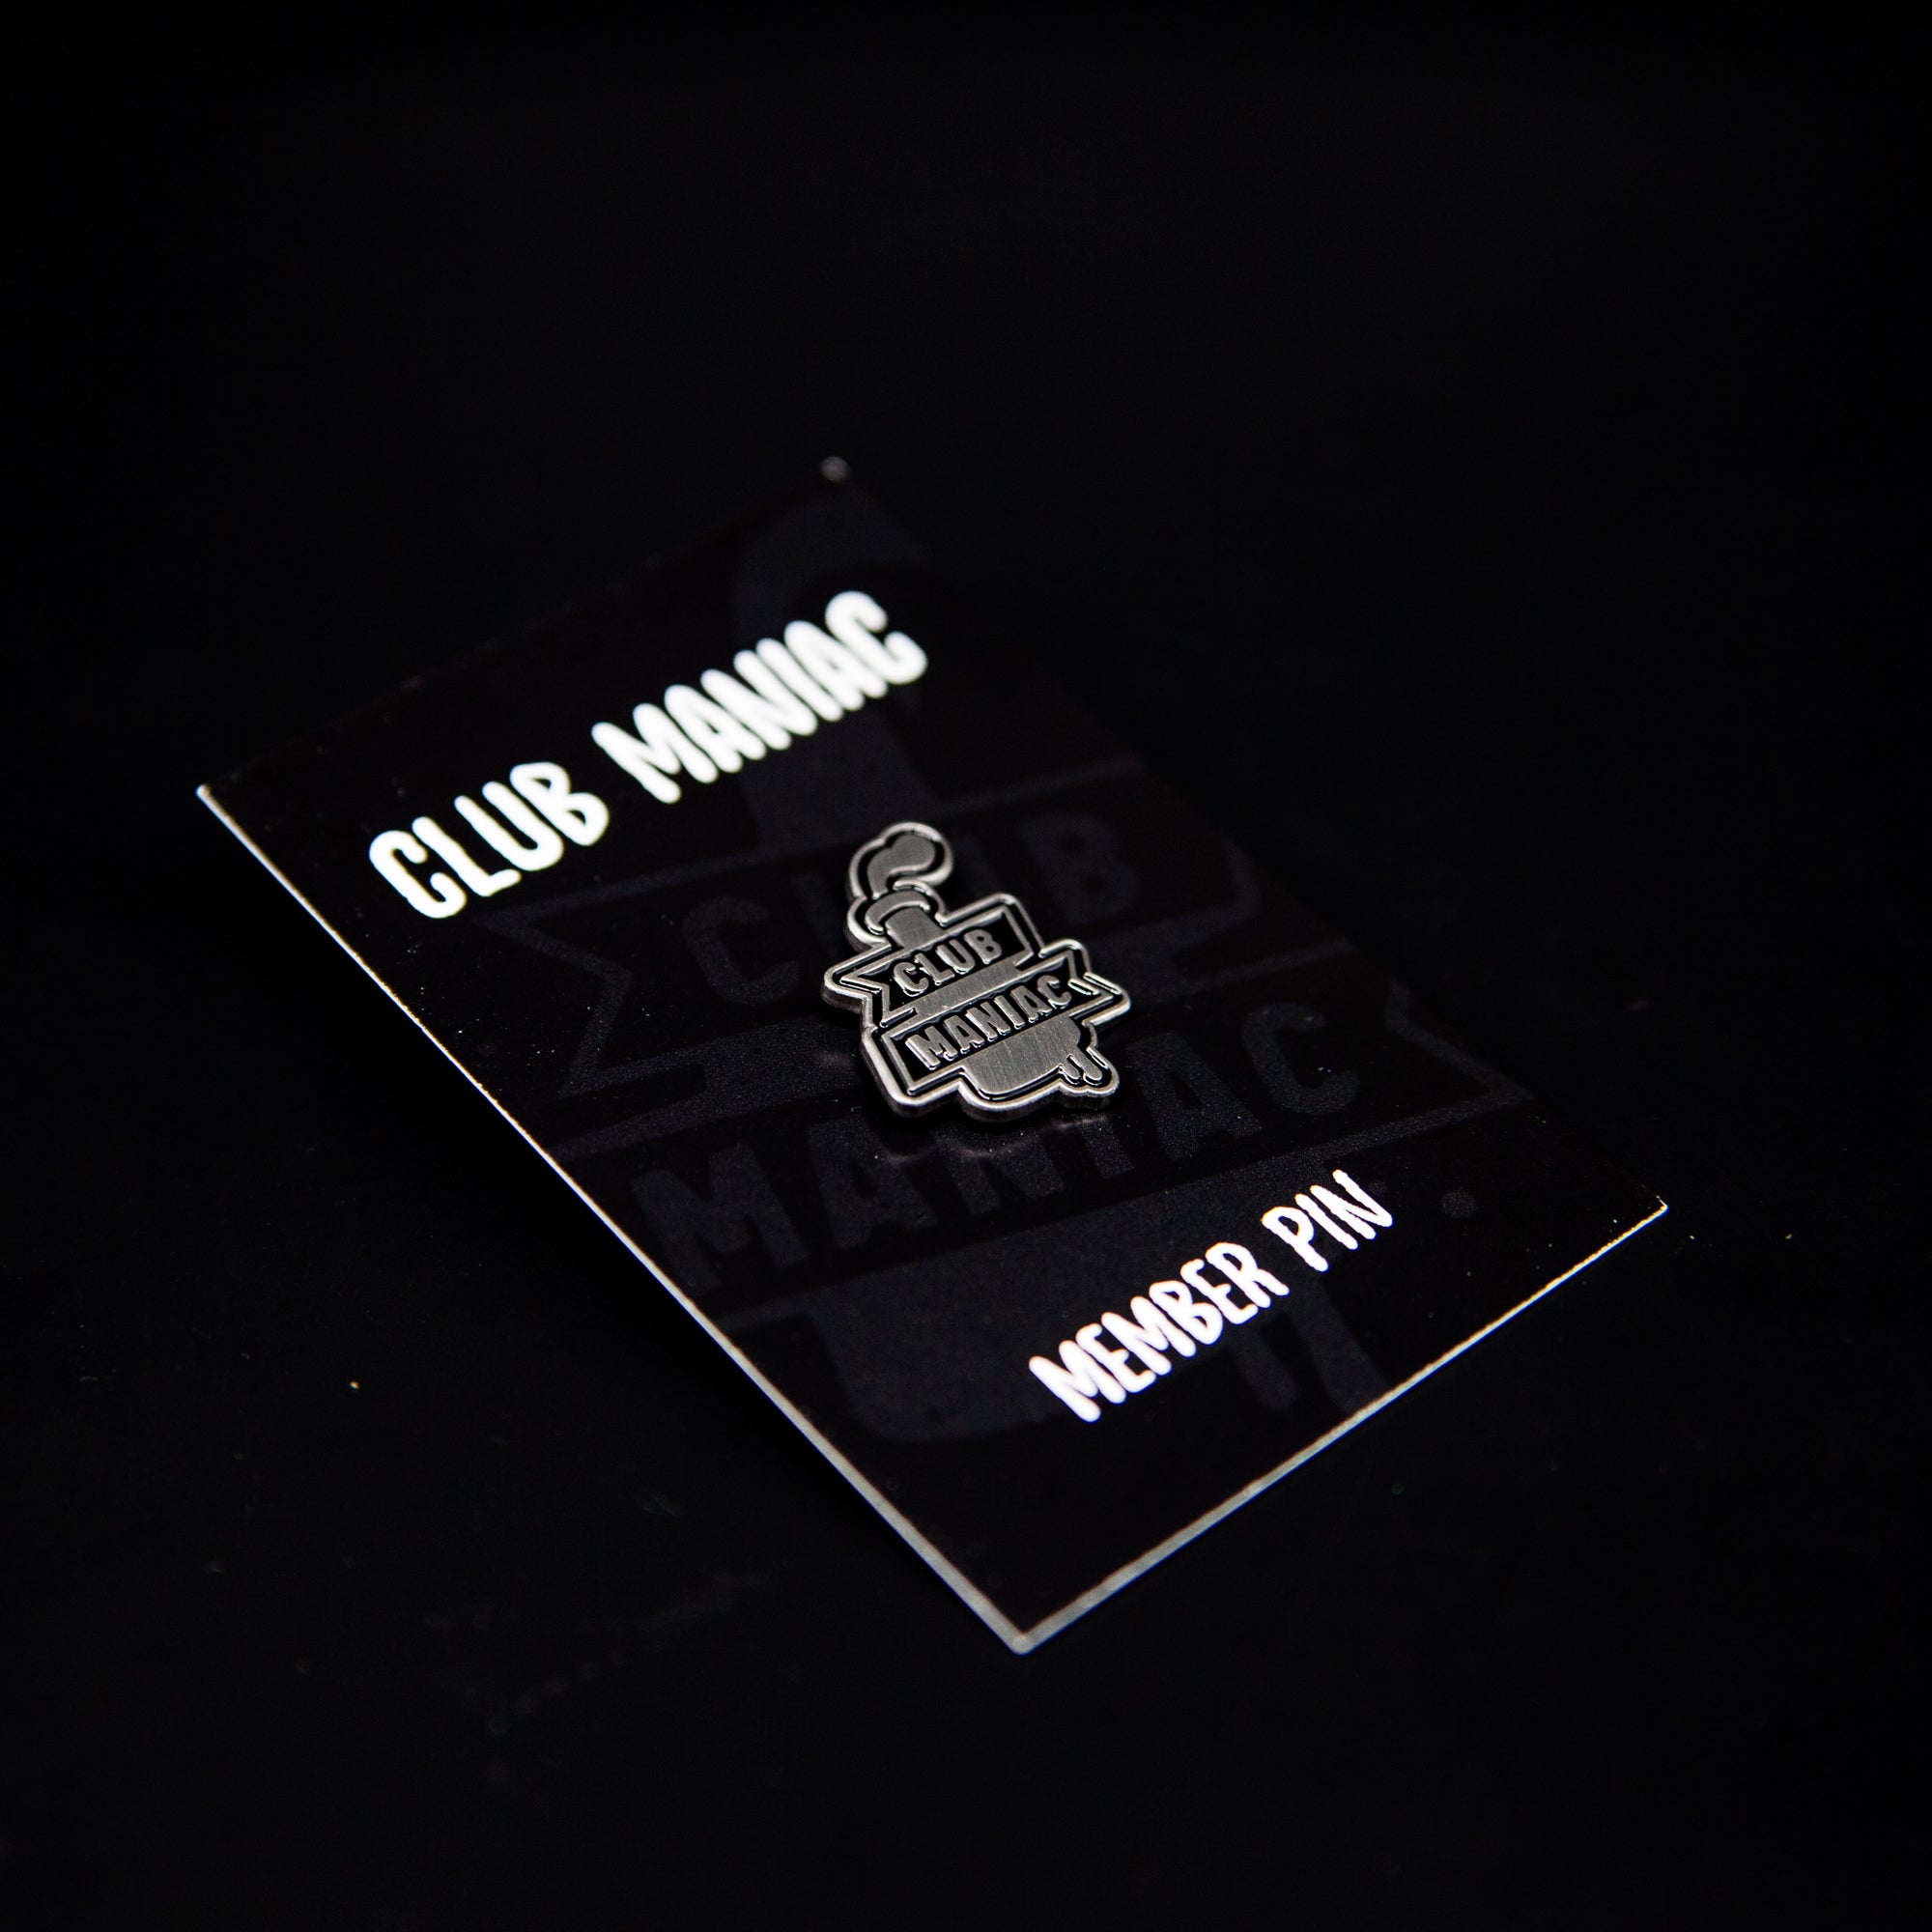 Club Maniac - Members Club & Subscription